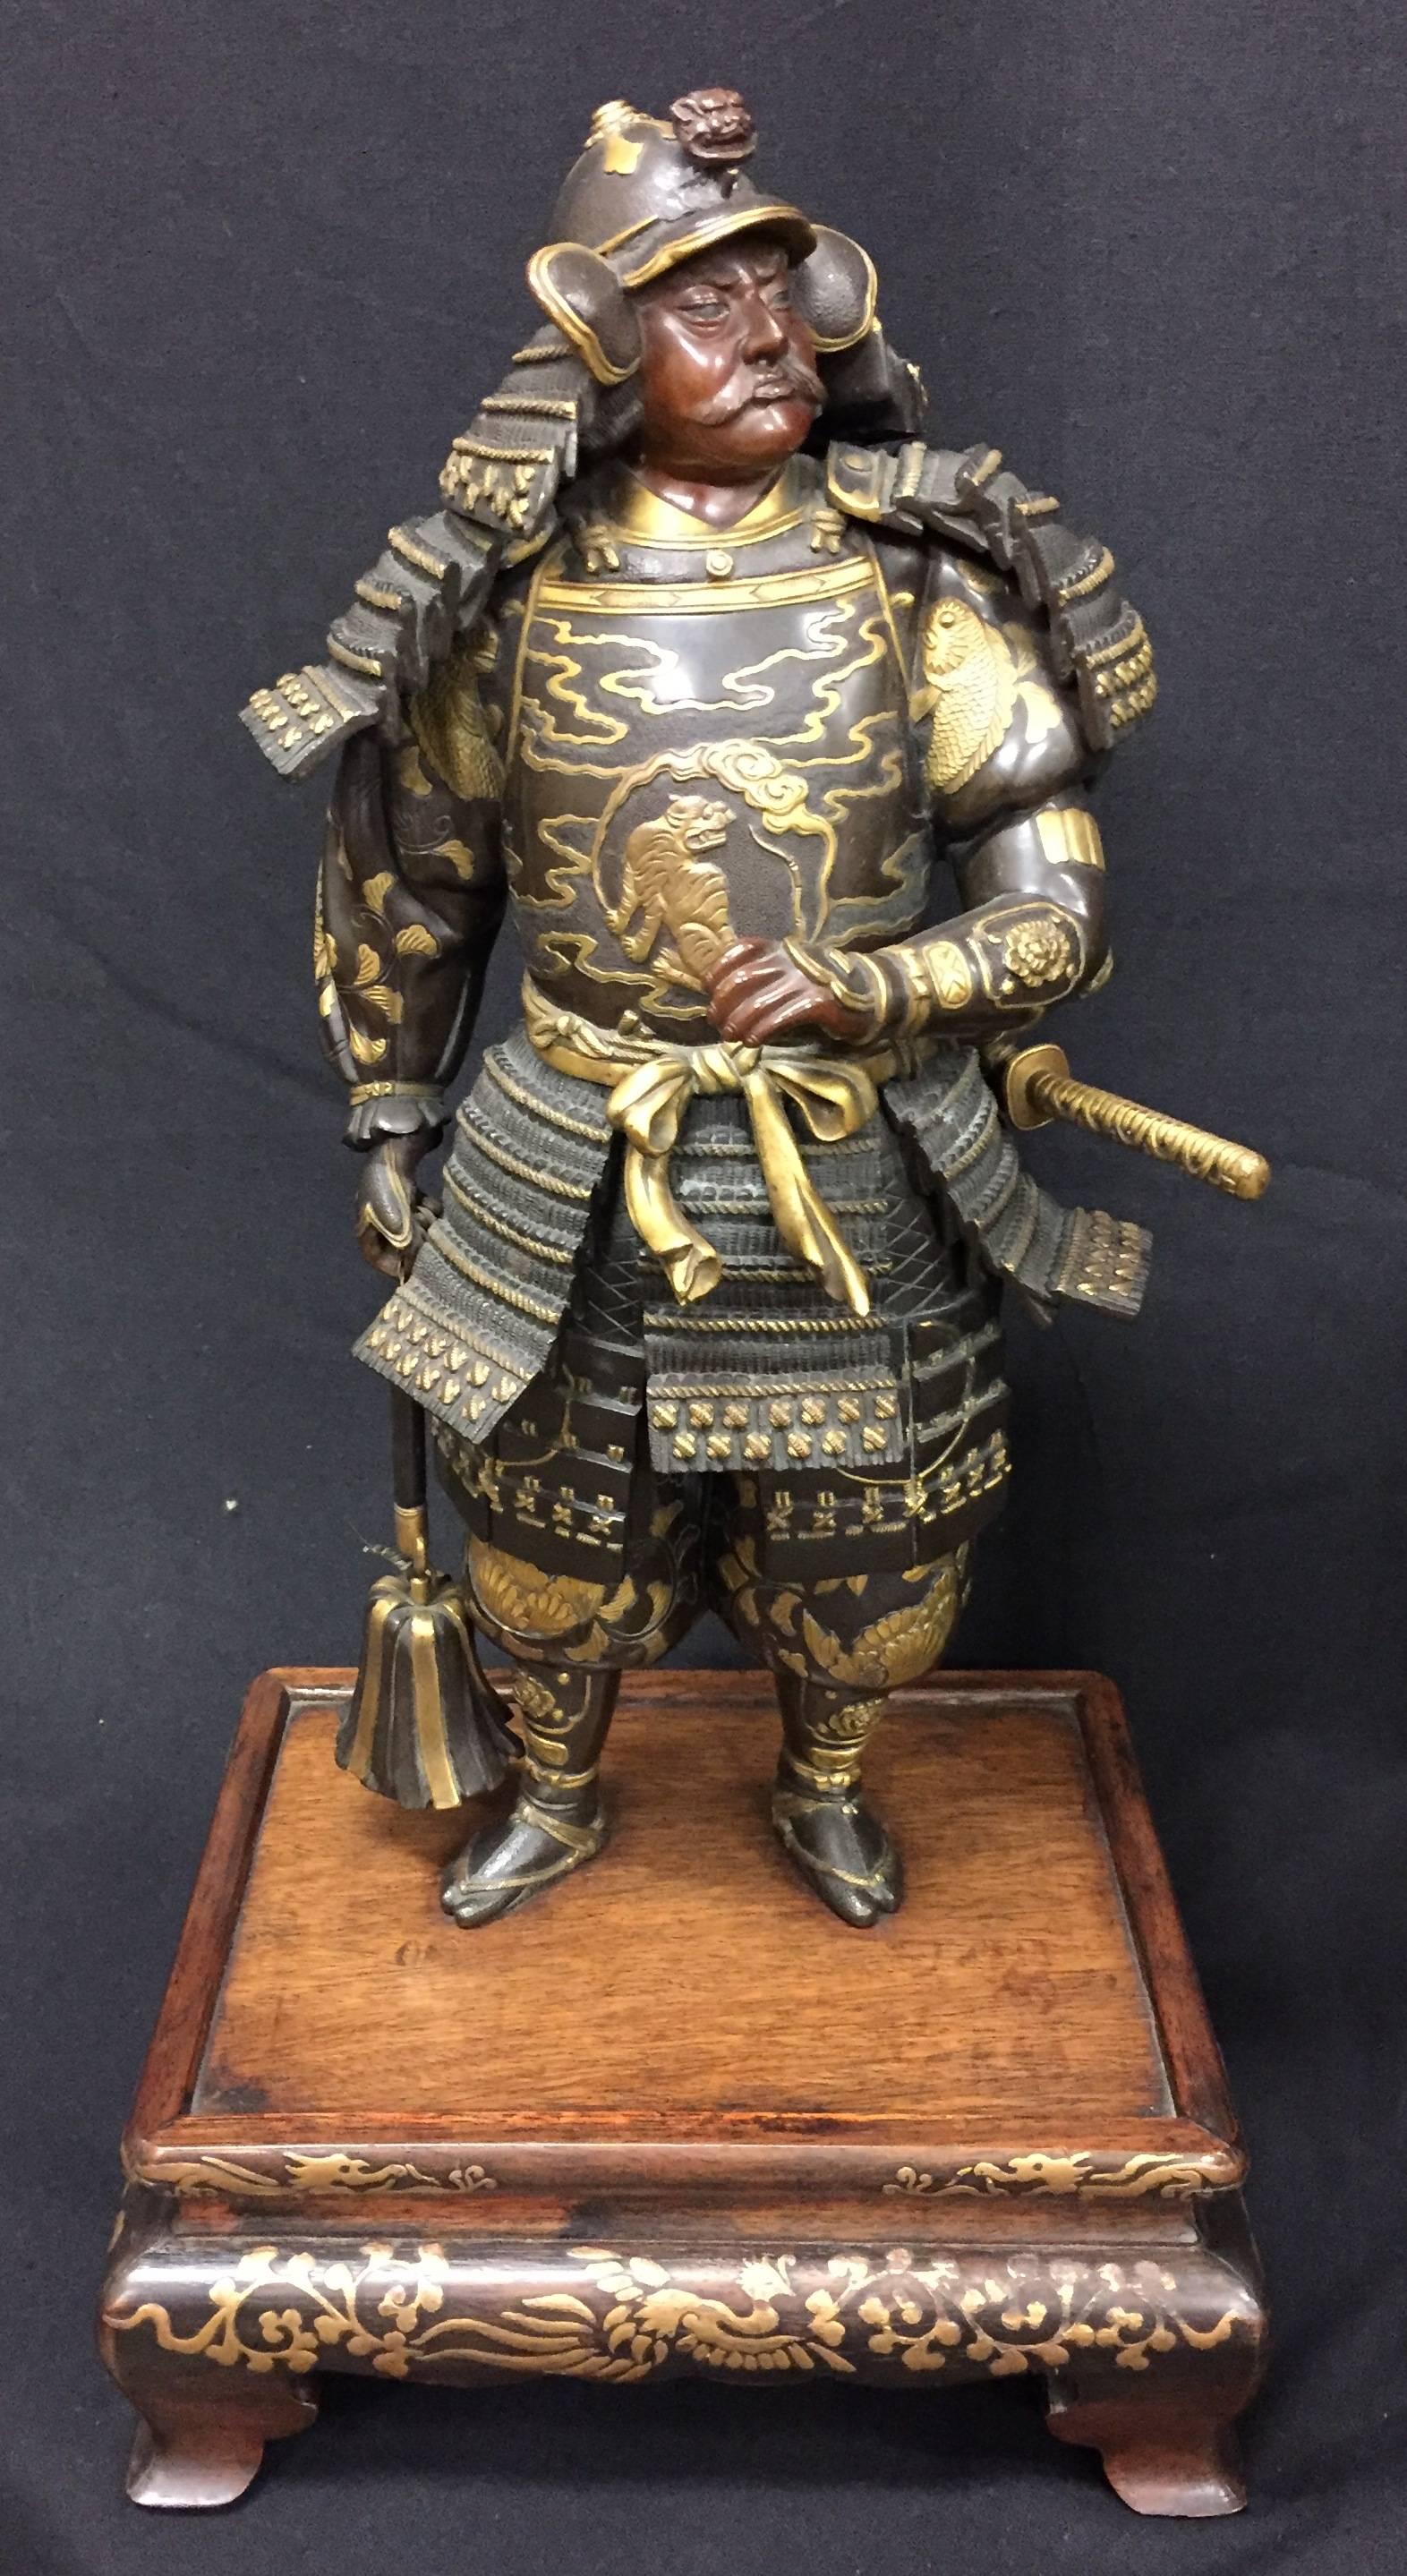 Two very good quality Japanese Miyao Eisuke bronze statues of Samurai warriors.